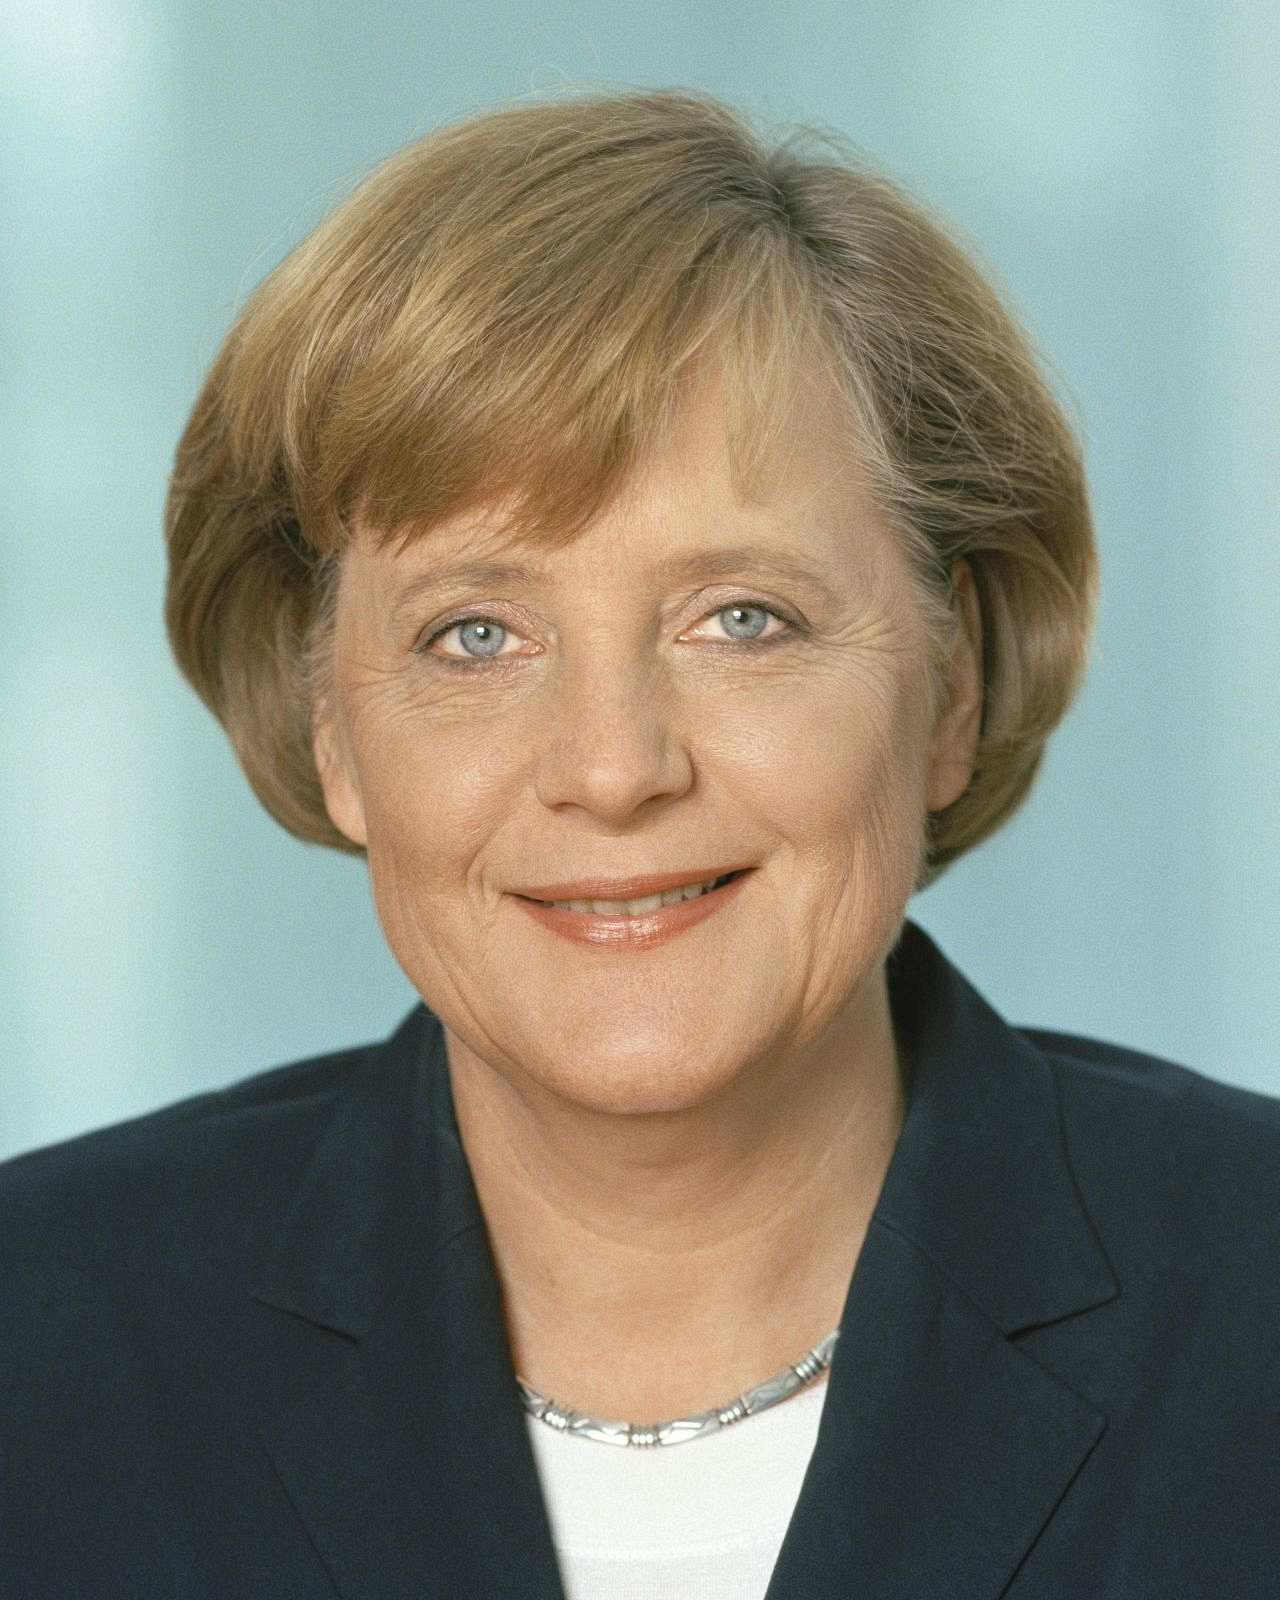 Offizielles Porträt von Angela Merkel, Bundeskanzlerin der Bundesrepublik ...